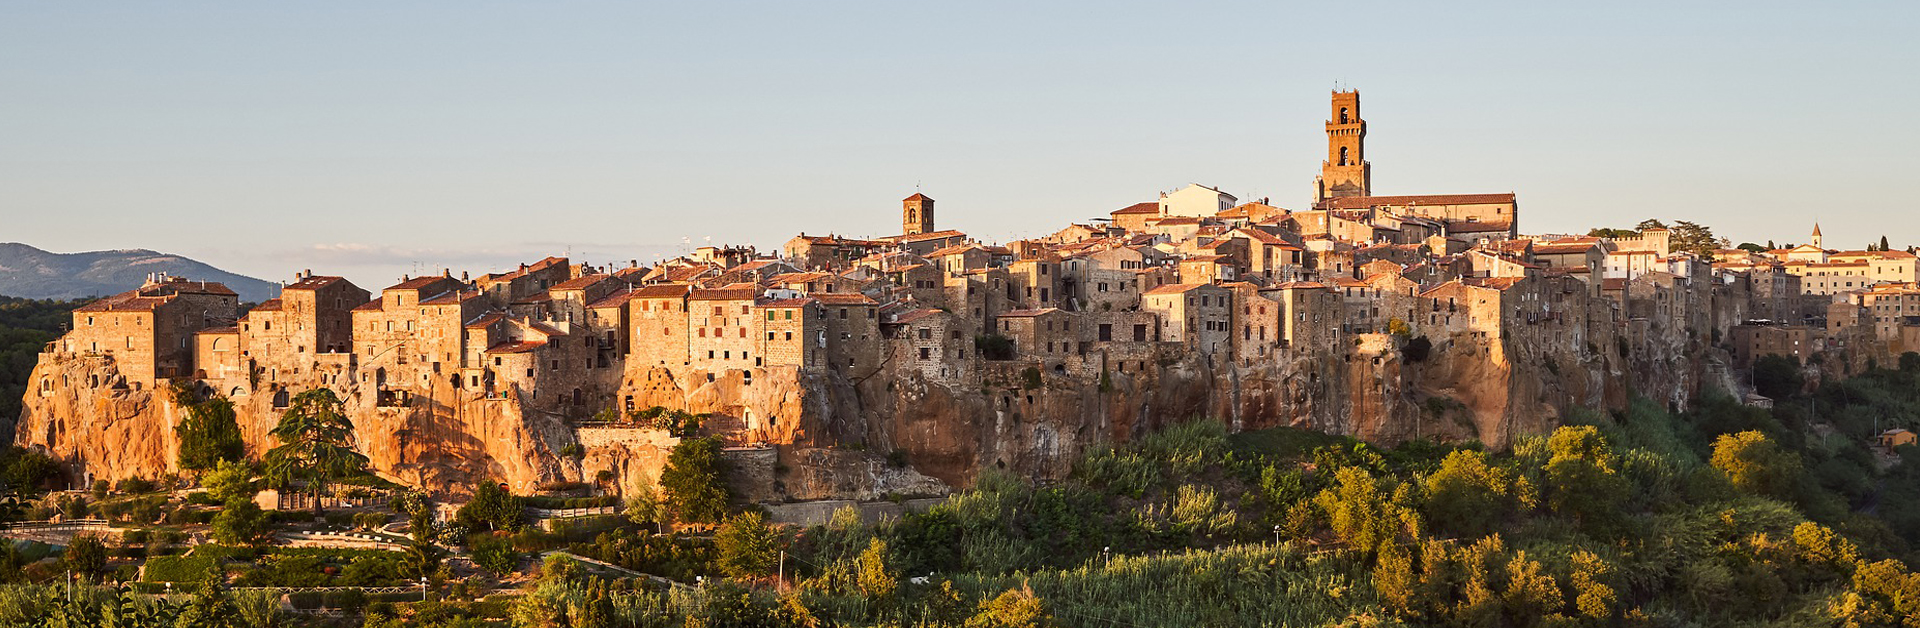 Itinerario di Novembre, 5 luoghi da visitare in Italia